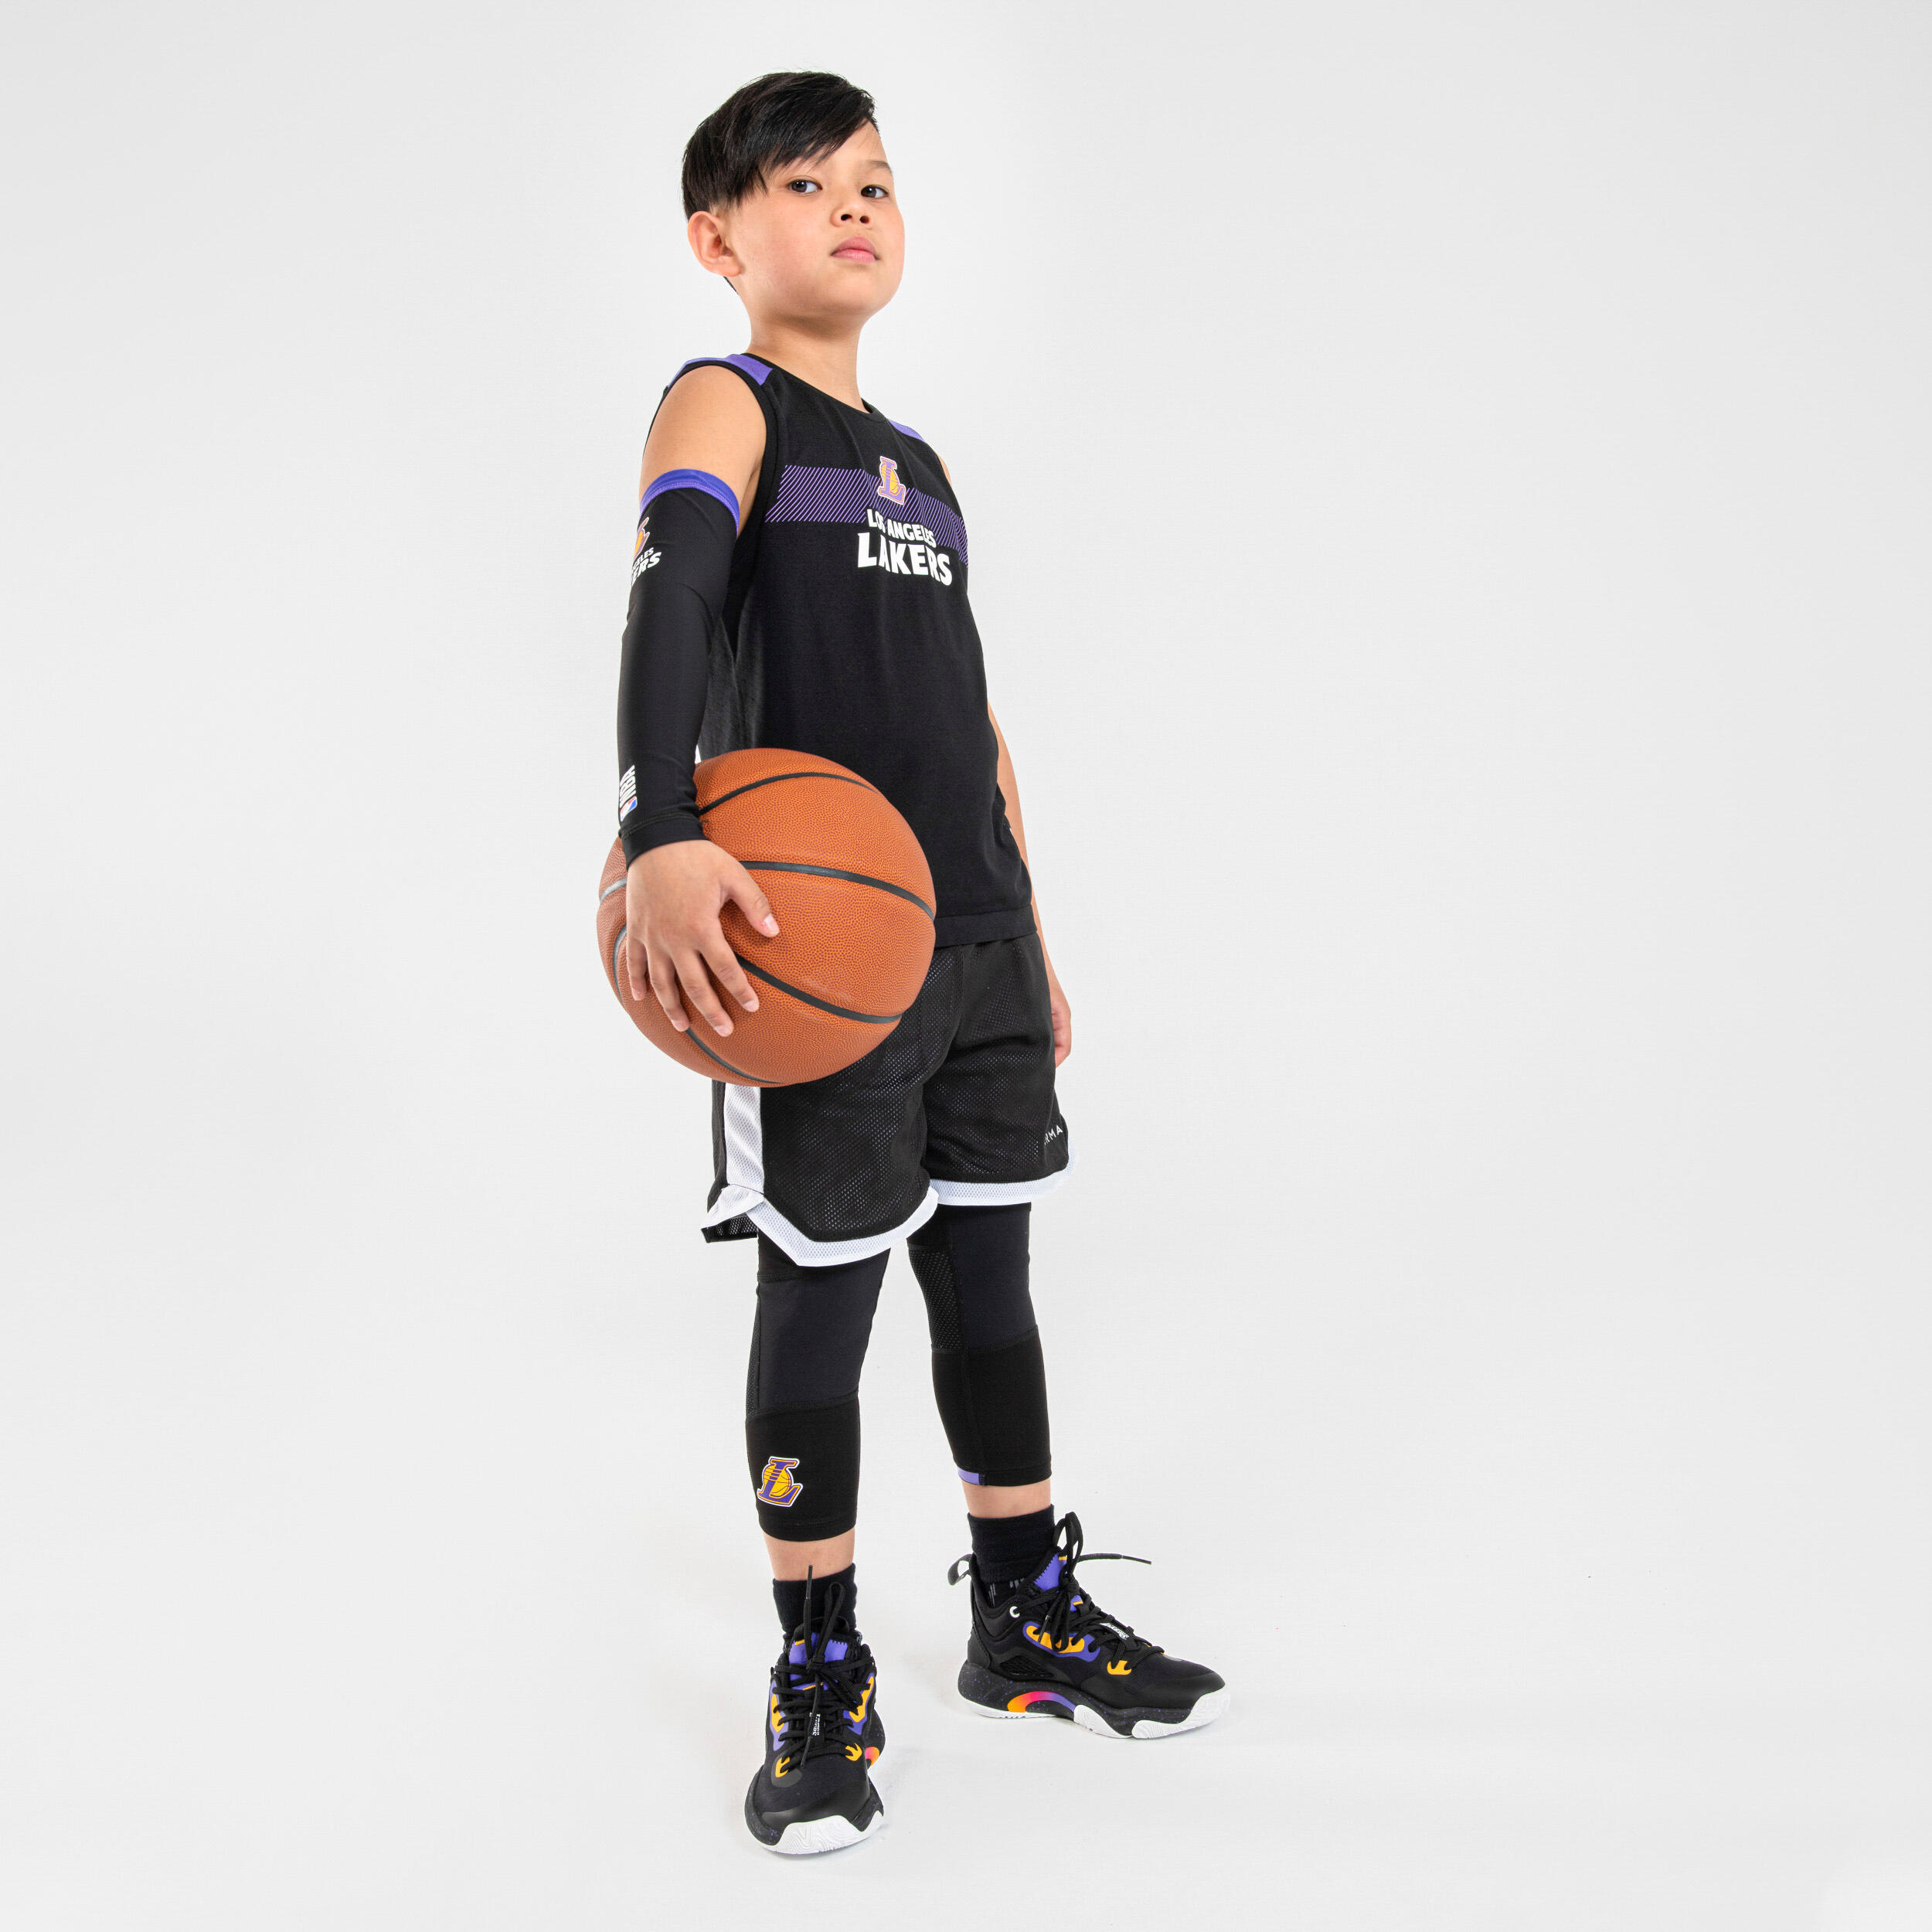 Kids' Basketball Sleeve E500 - NBA Los Angeles Lakers/Black 5/8